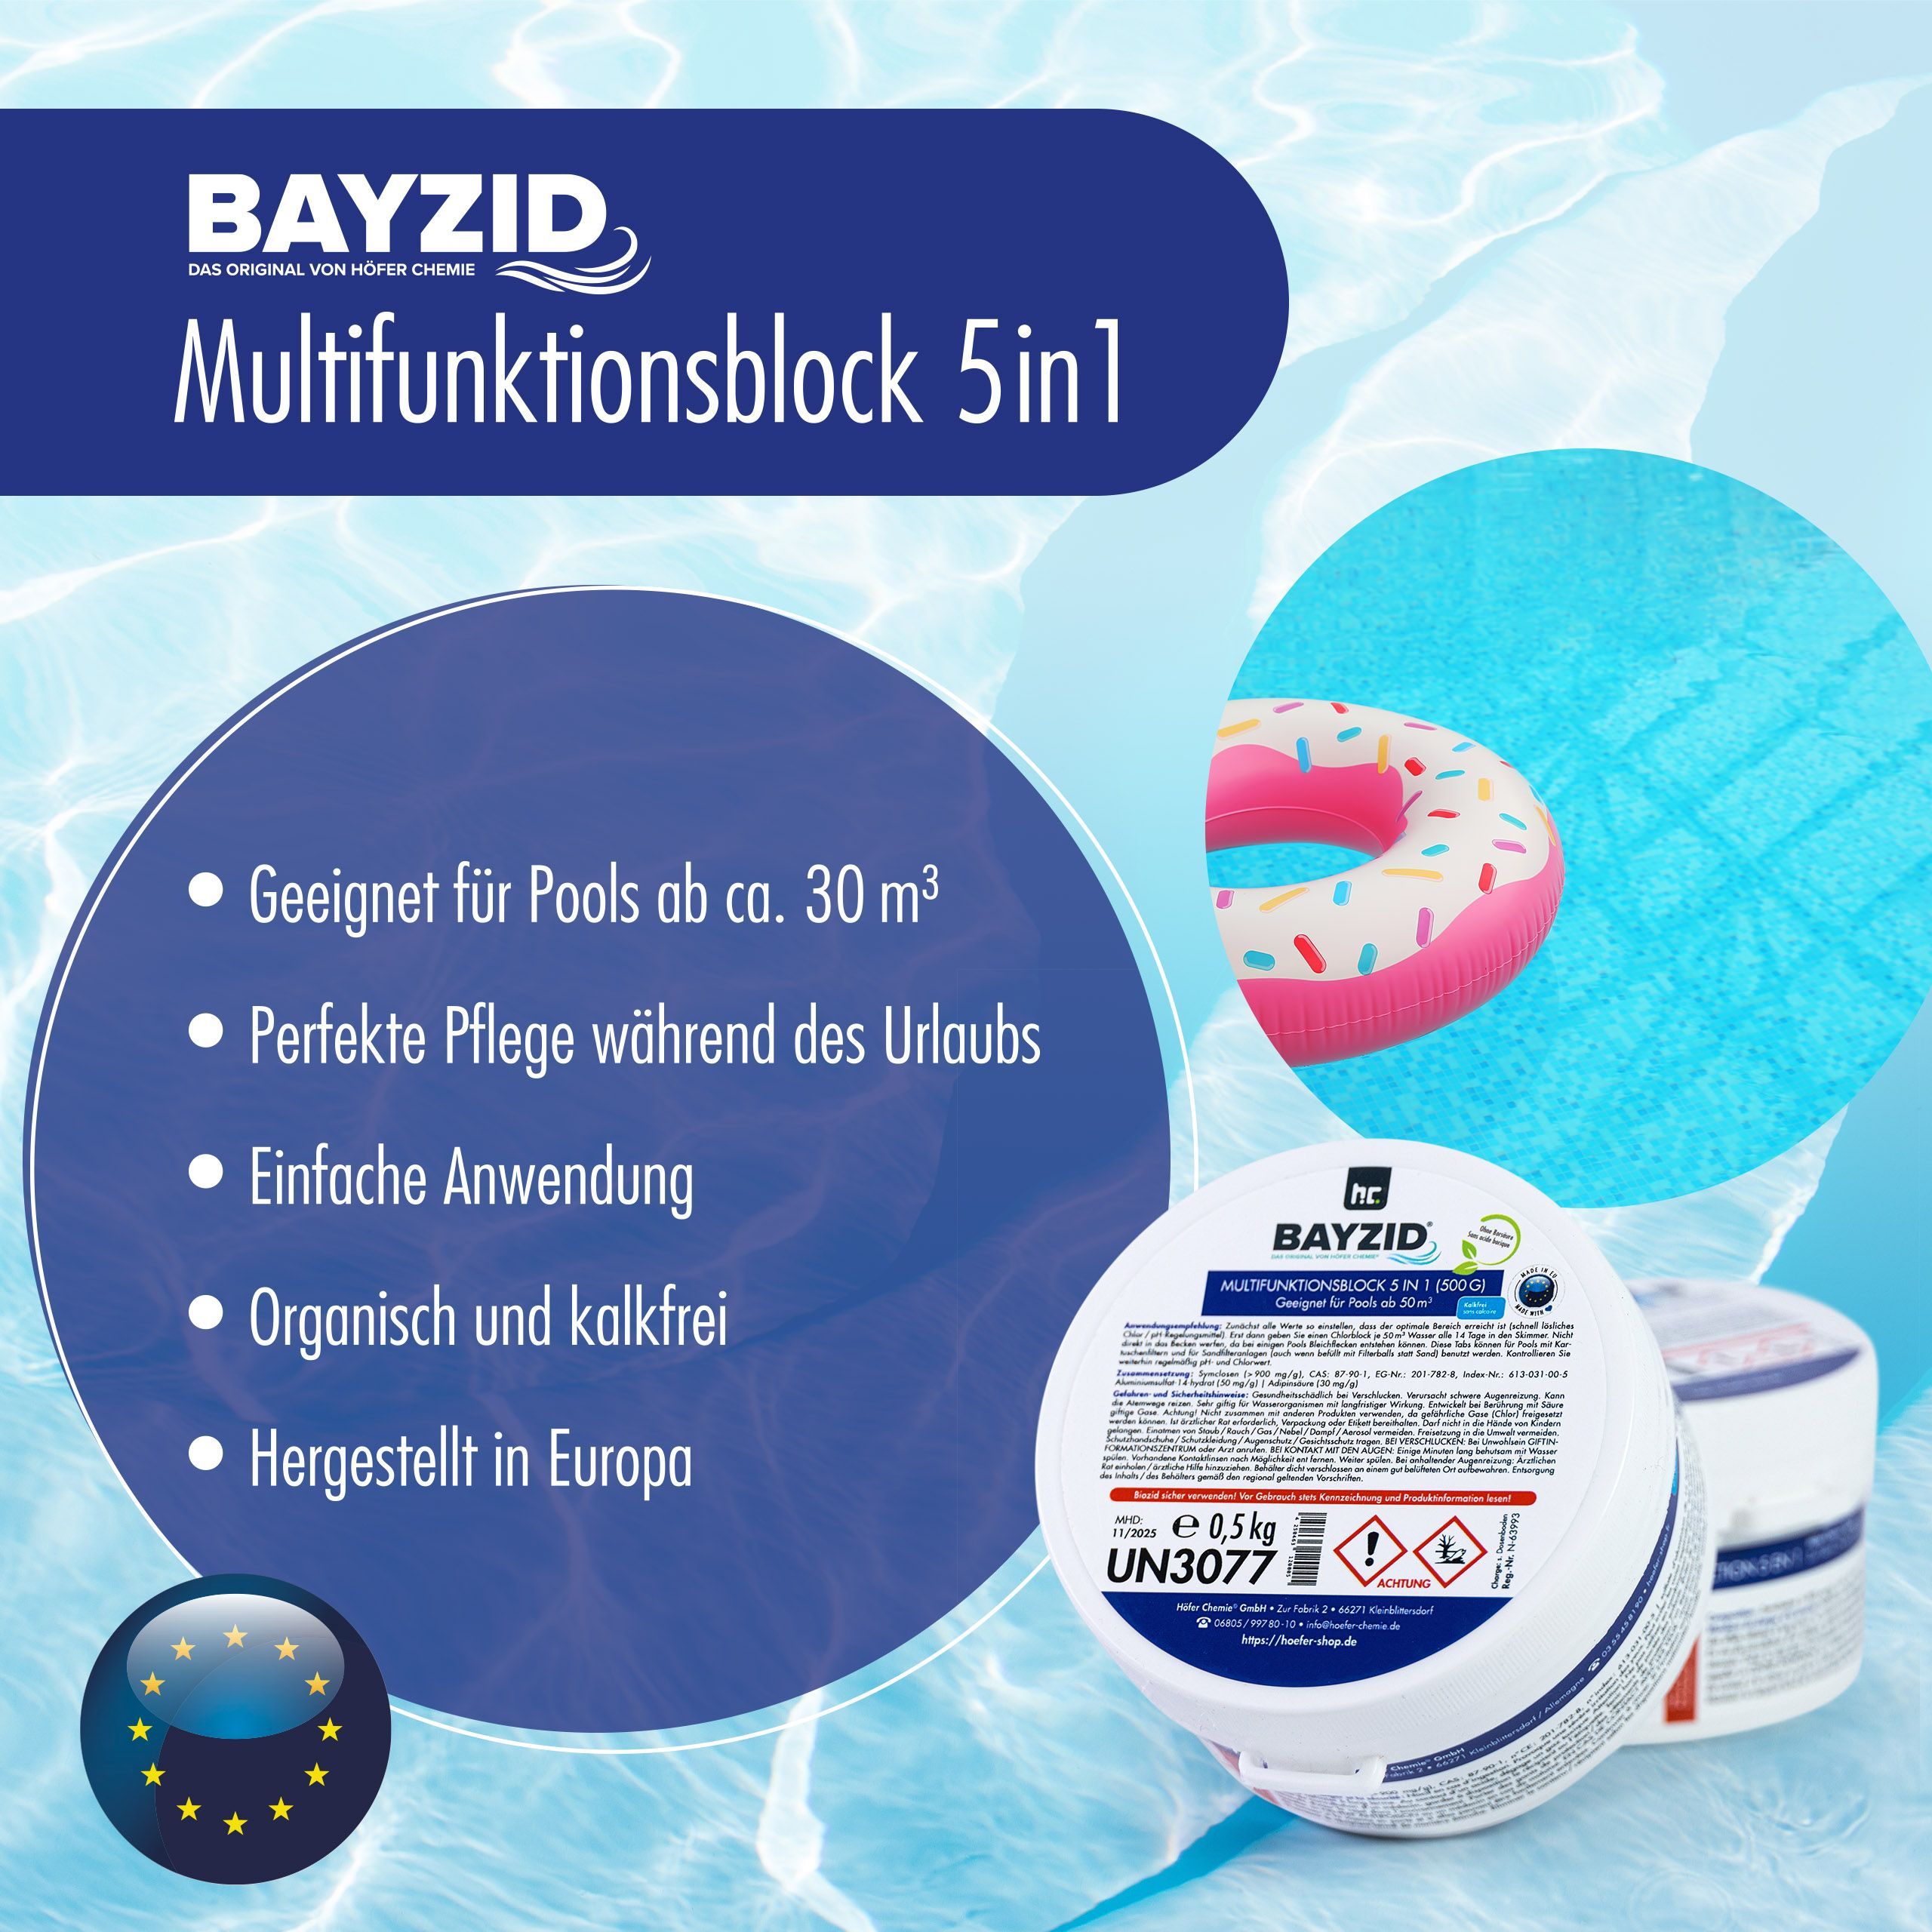 Bayzid® Chlore multifonction, bloc de 500g